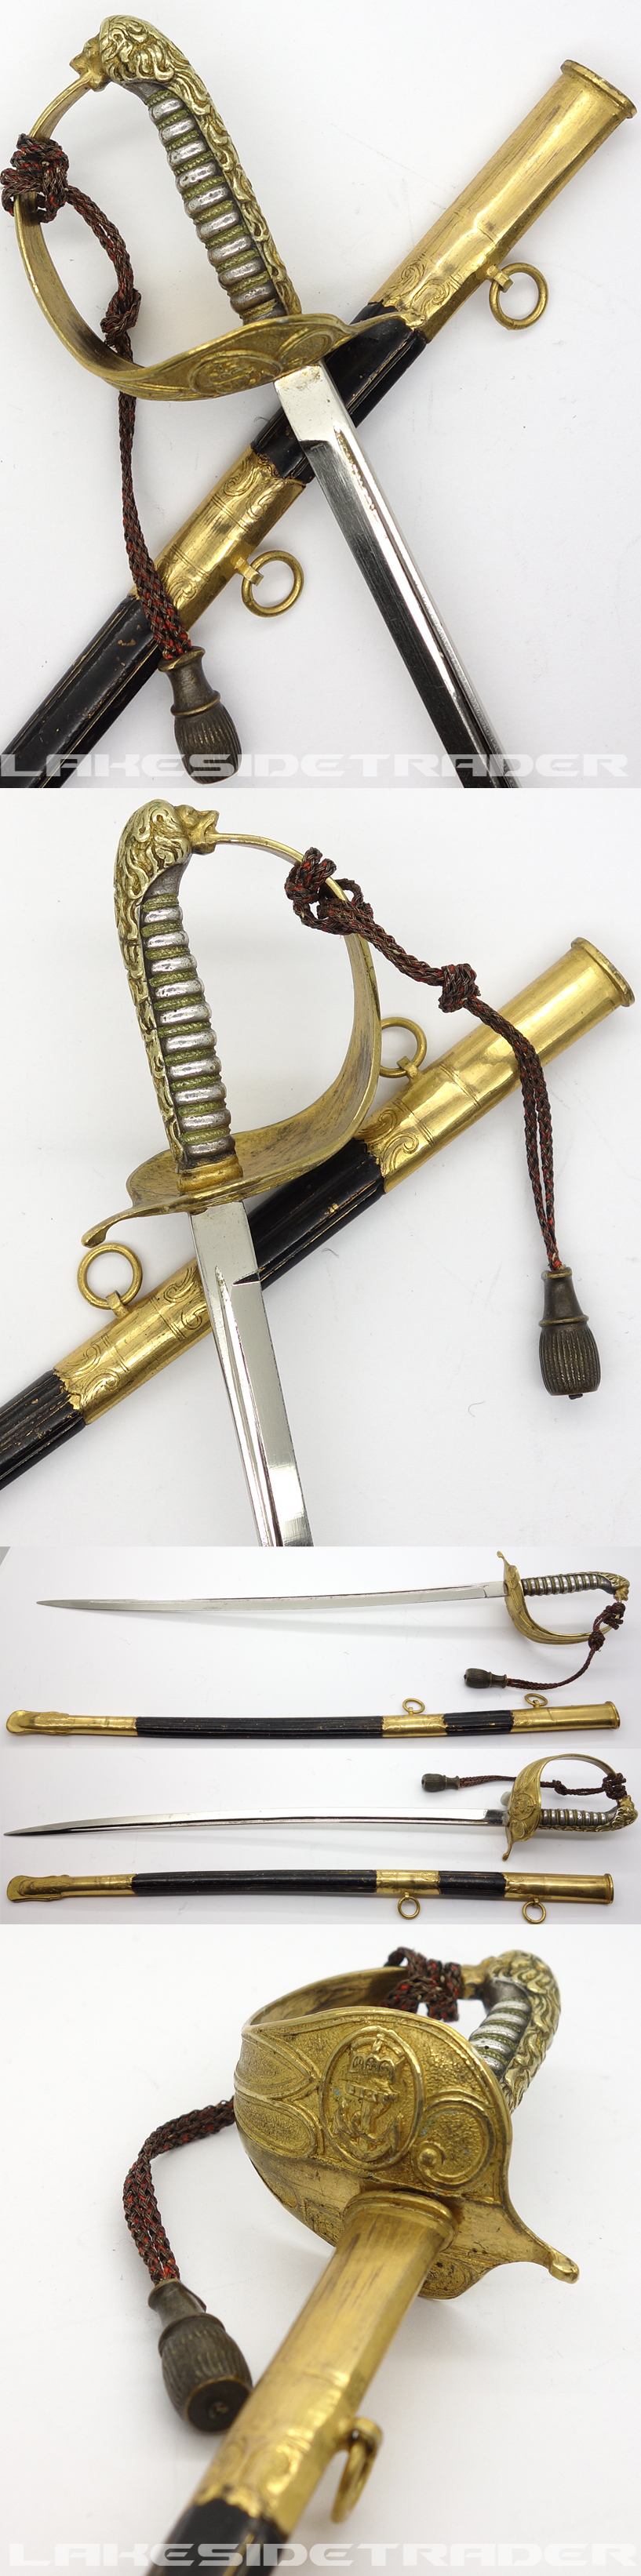 Miniature Navy Sword